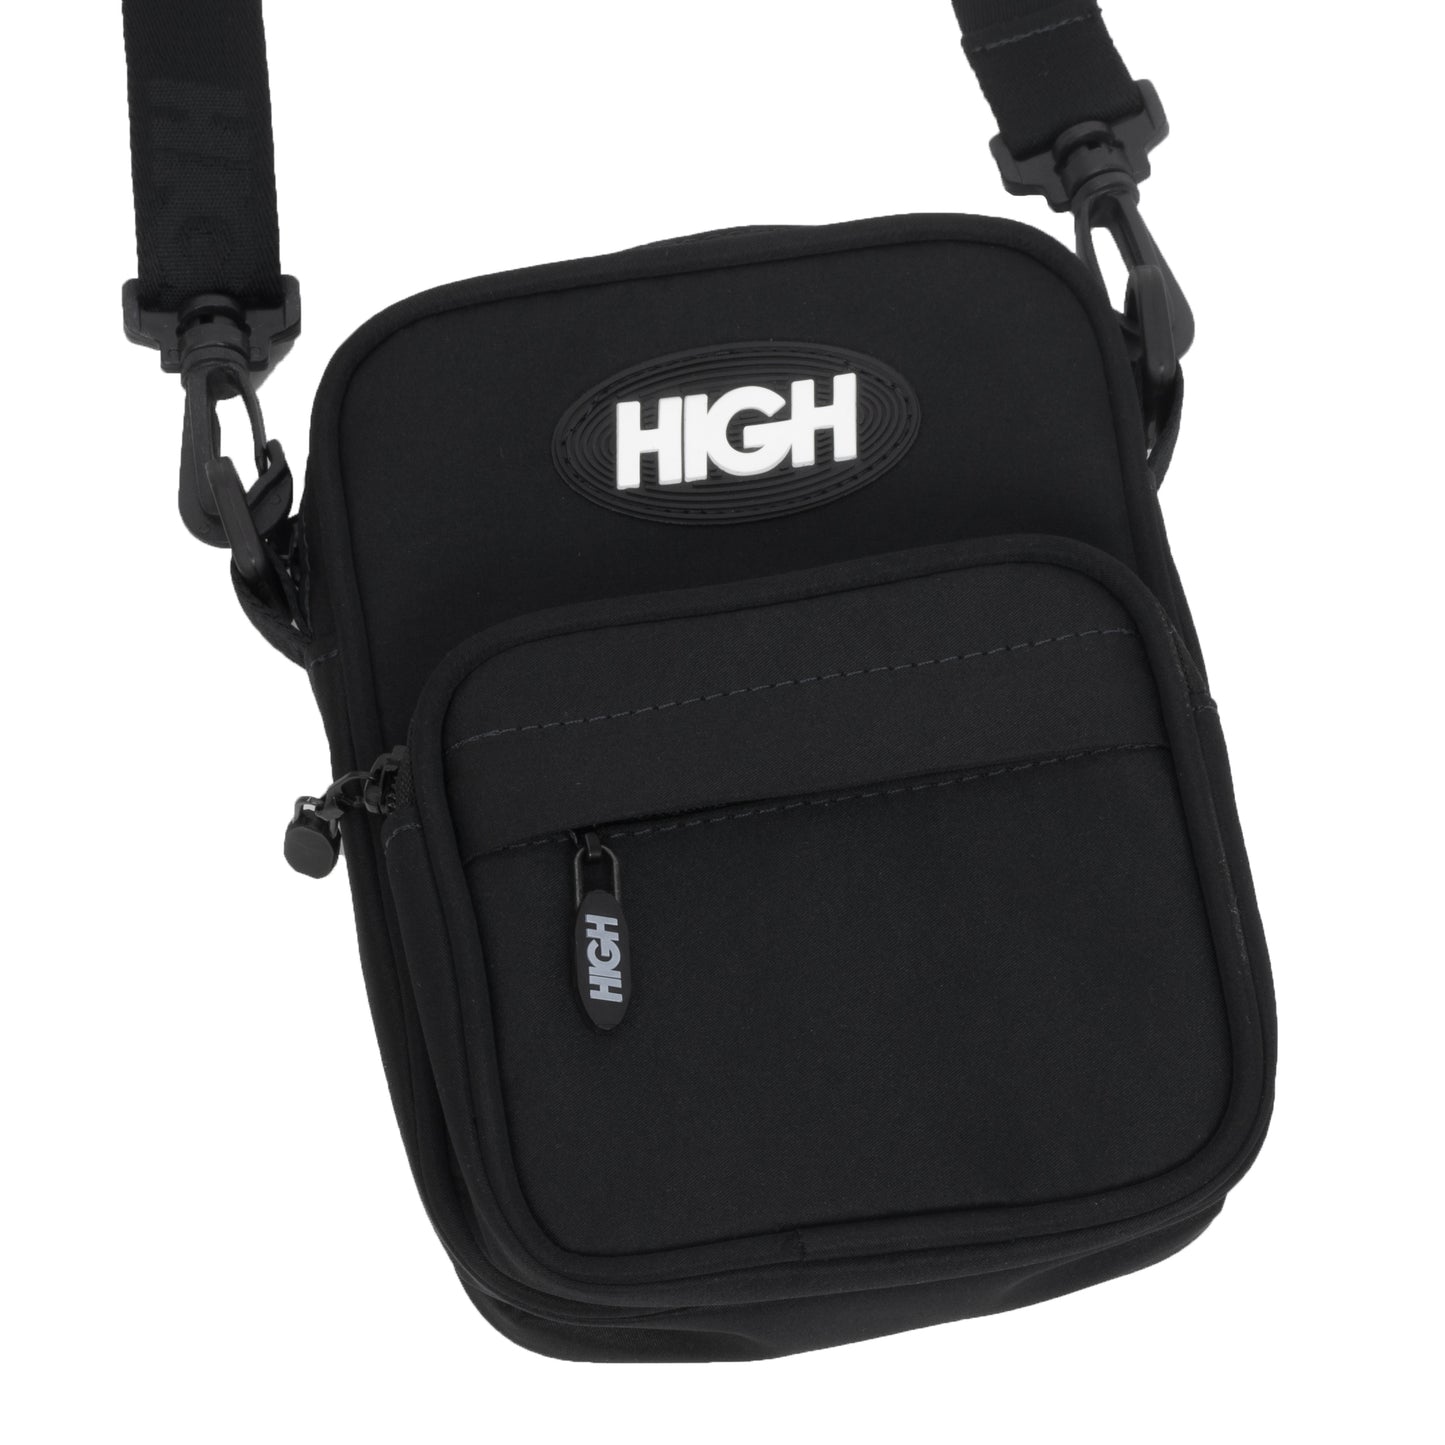 HIGH - Shoulder Bag Essential "Black" - THE GAME